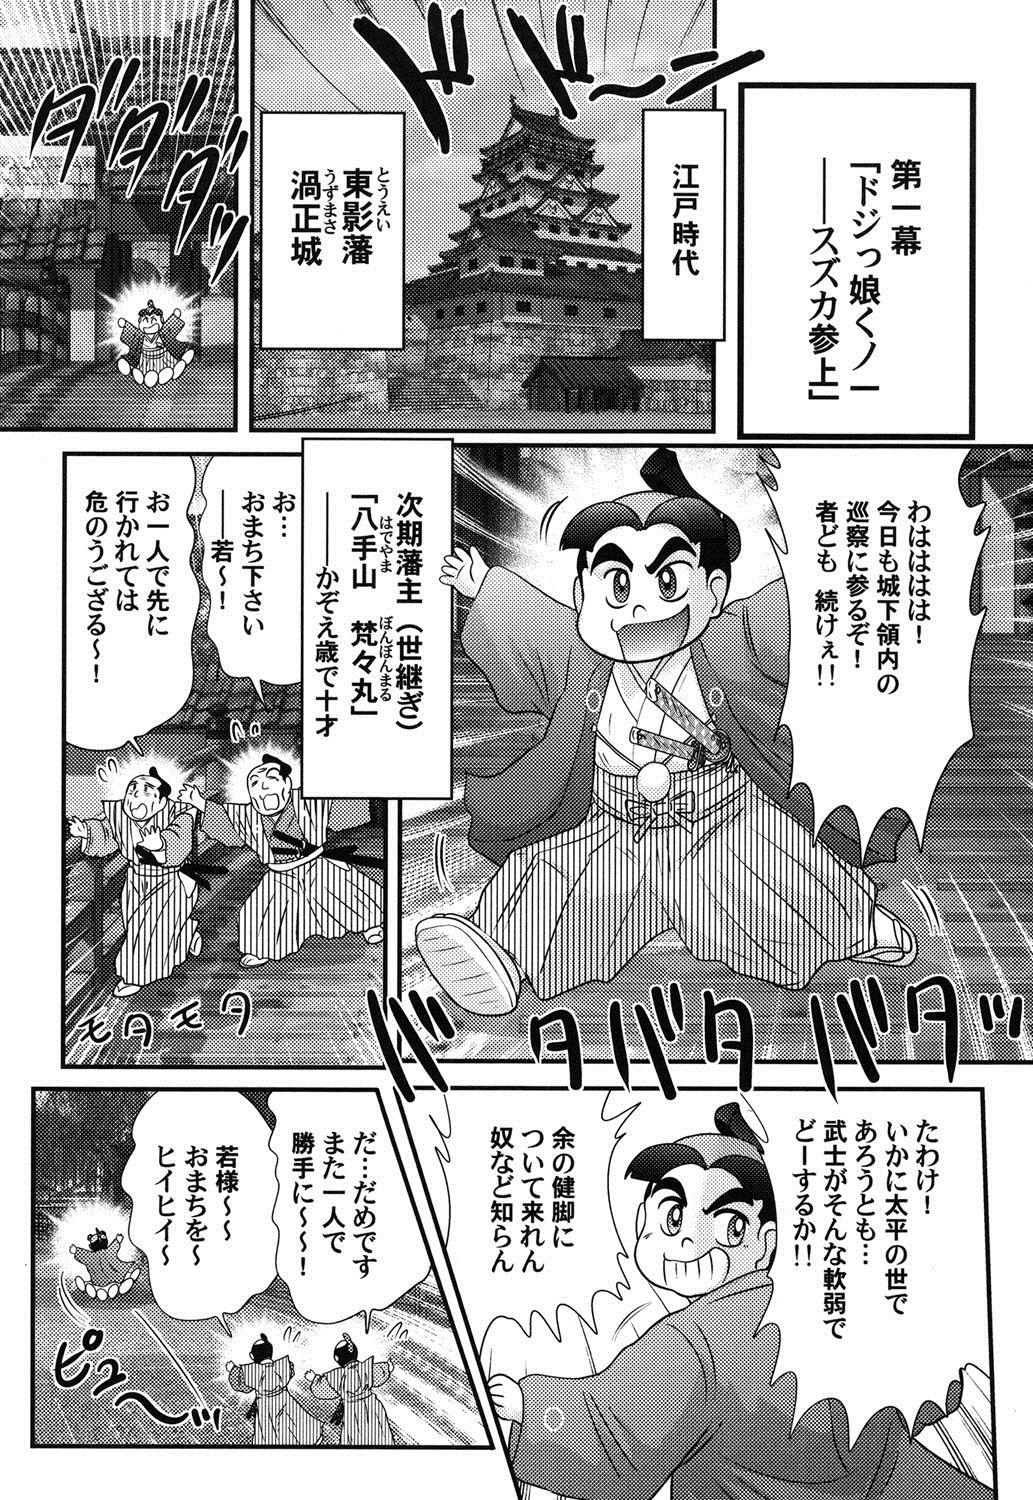 Culo Grande Mitsu nure ninjya Shinmai ninja Suzuka Punk - Page 3